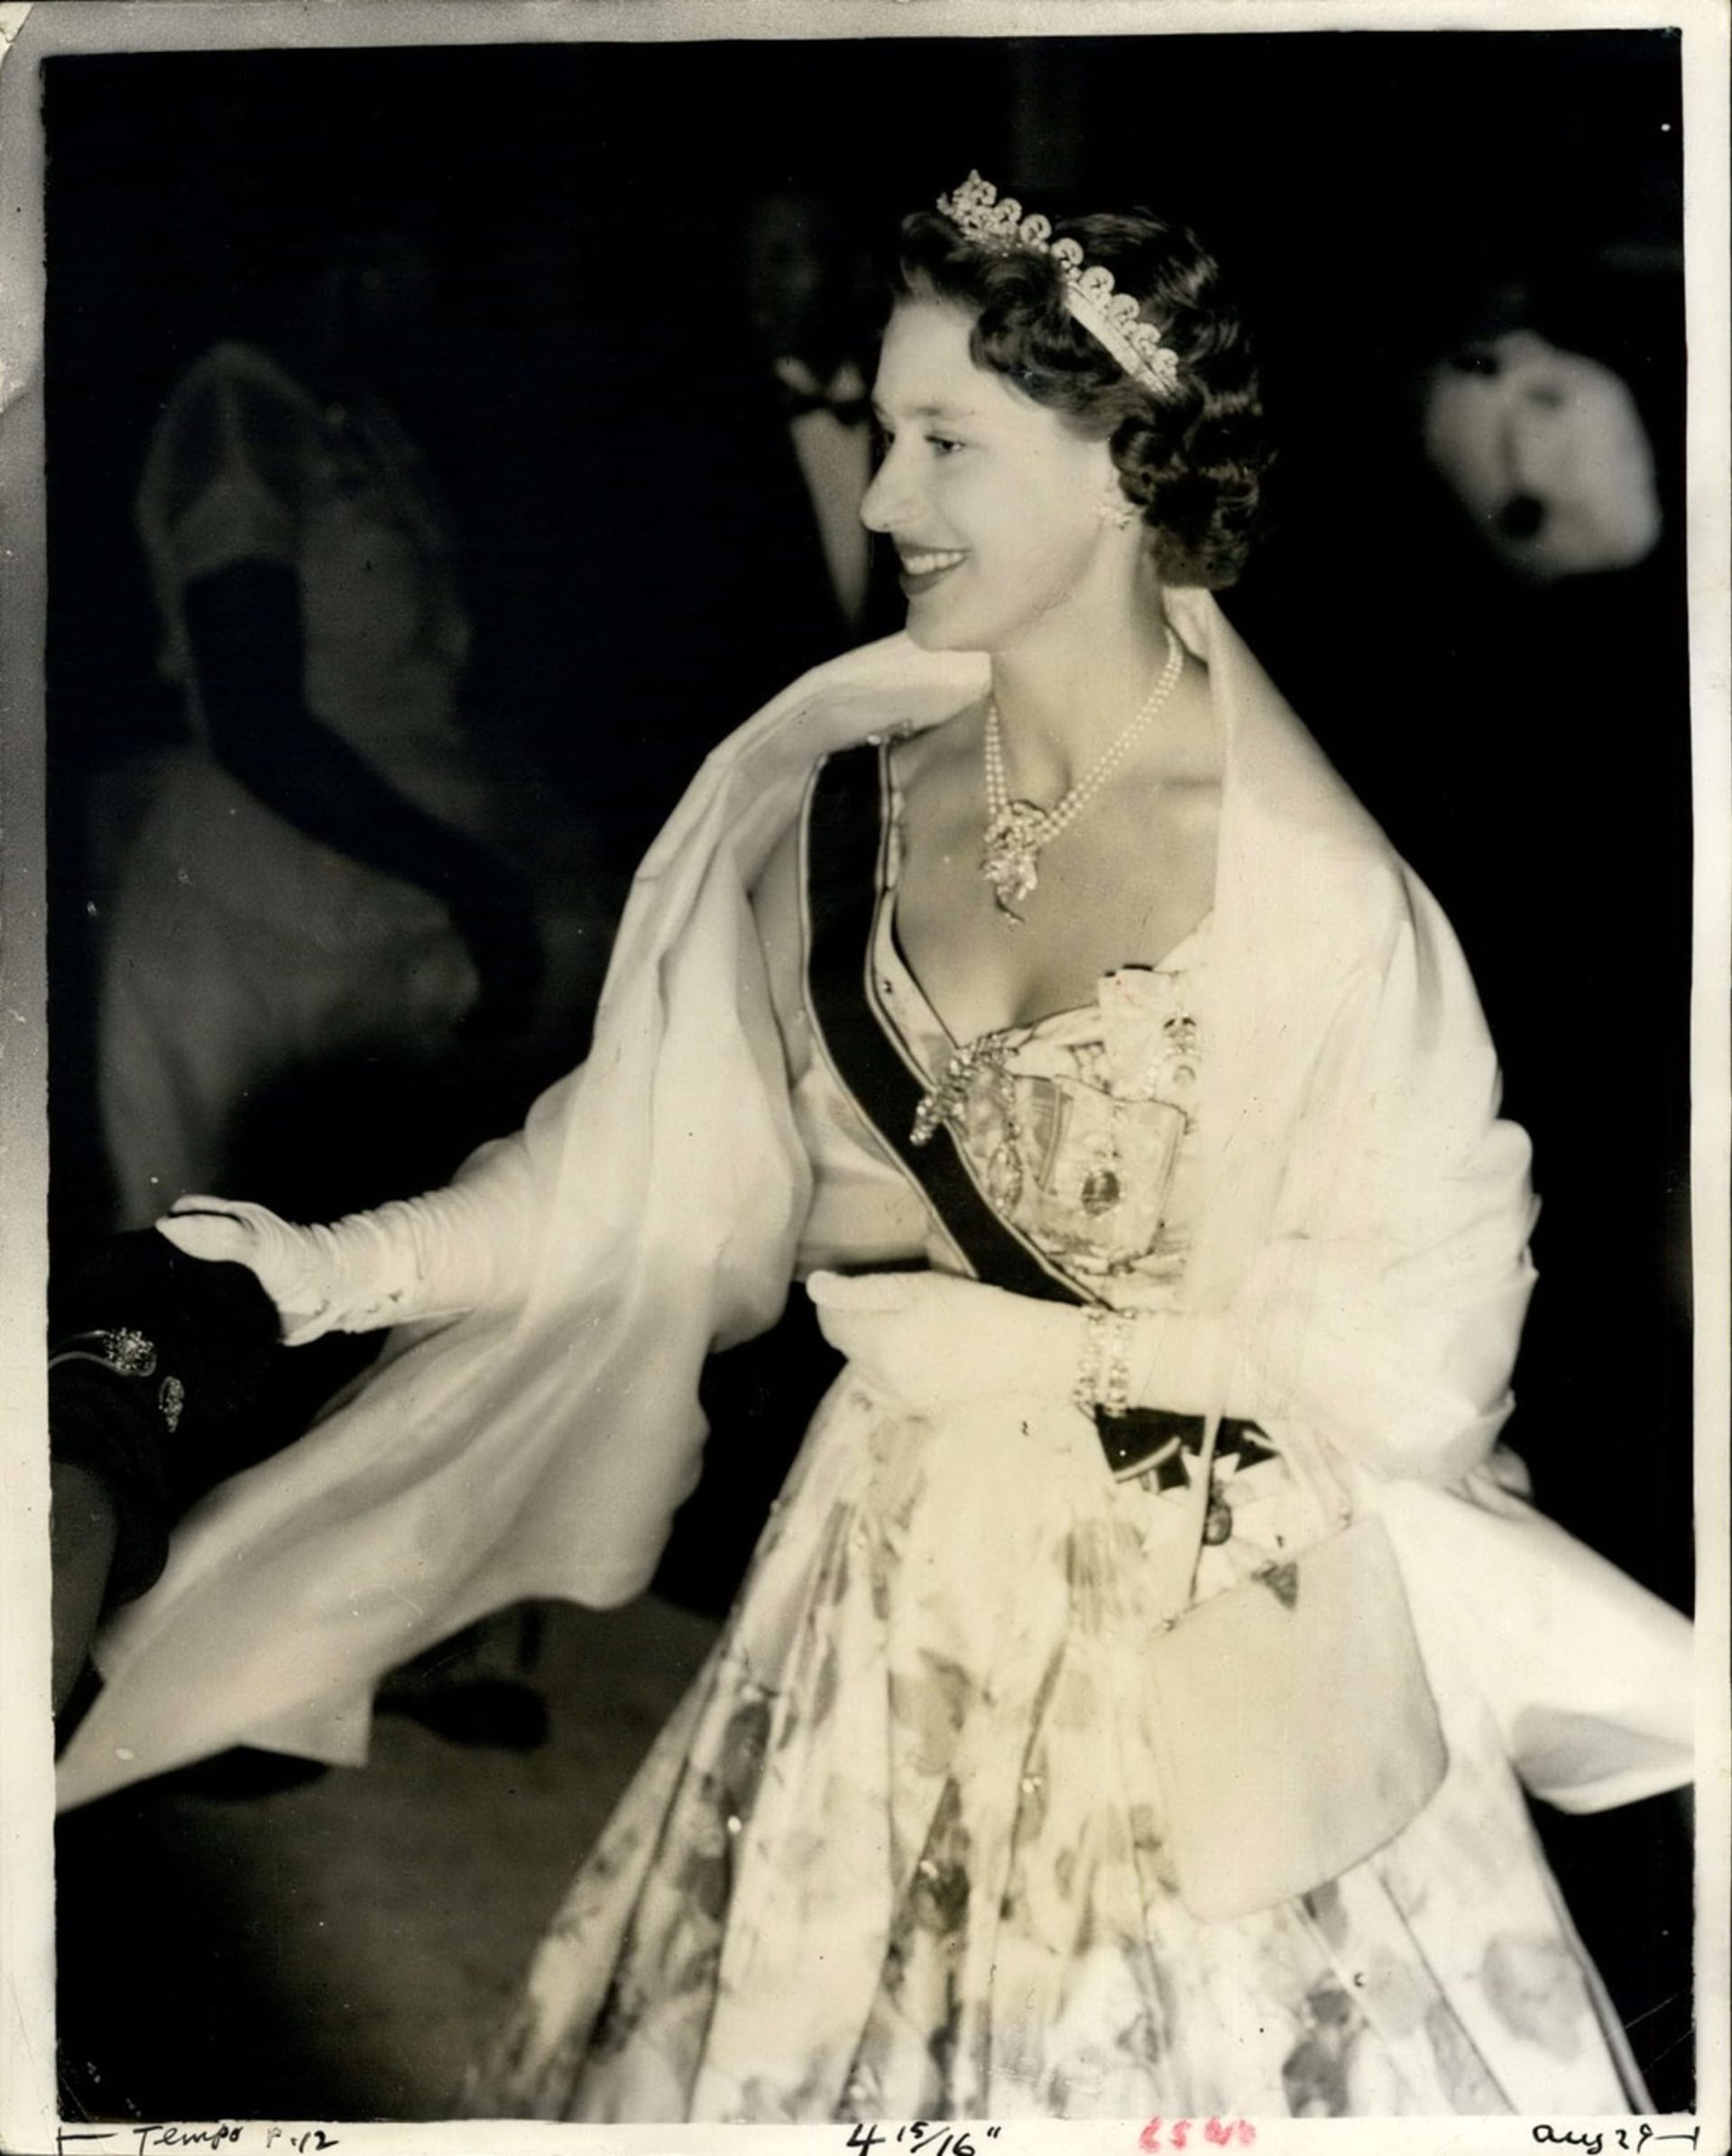 Margaret v roce 1955